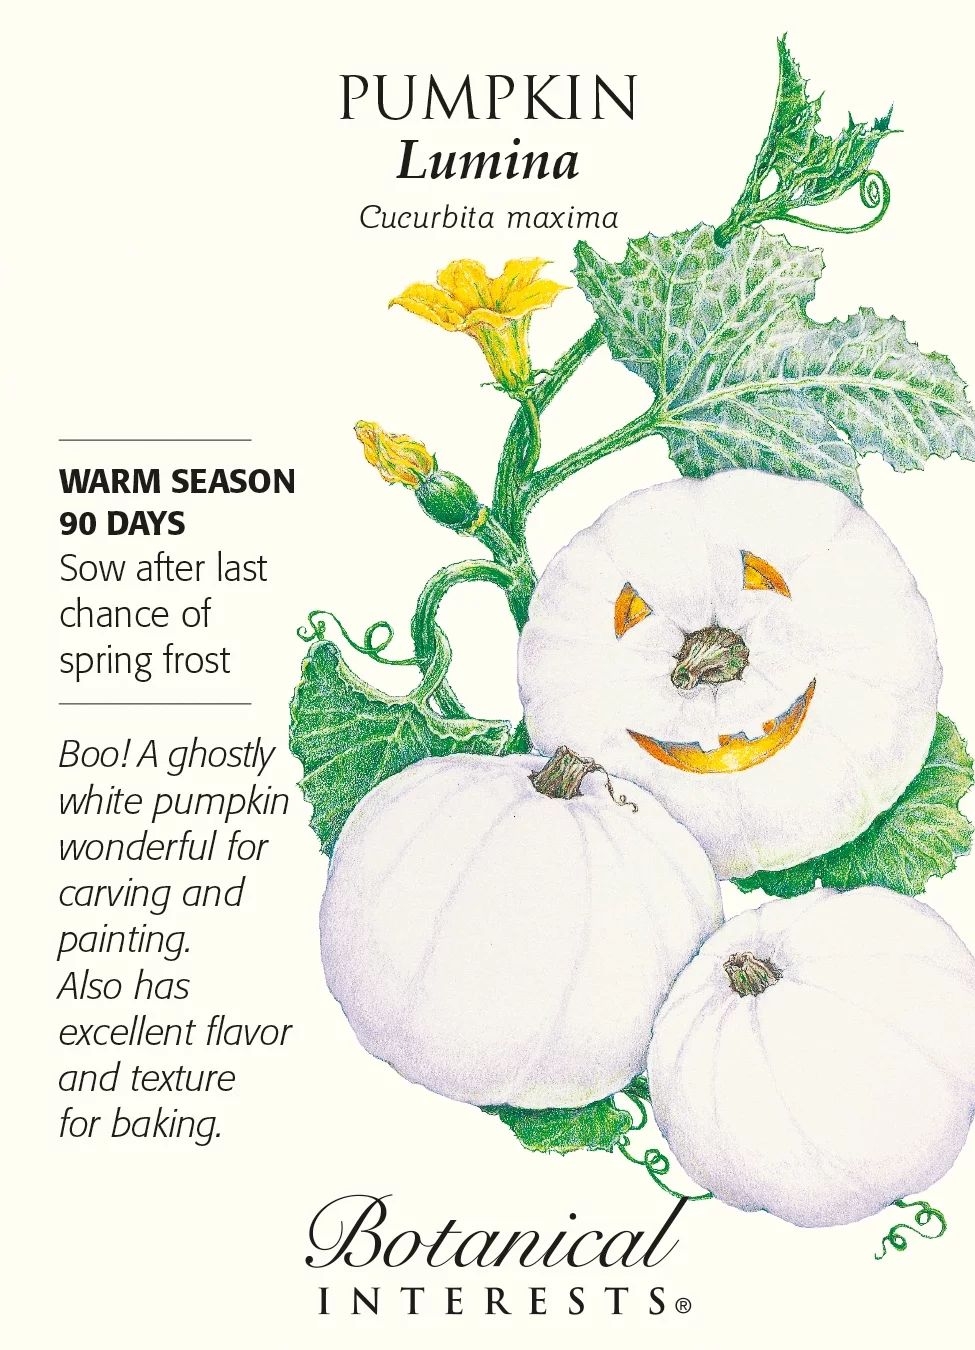 Lumina White Pumpkin Seeds - 6 Seeds - Walmart.com | Walmart (US)